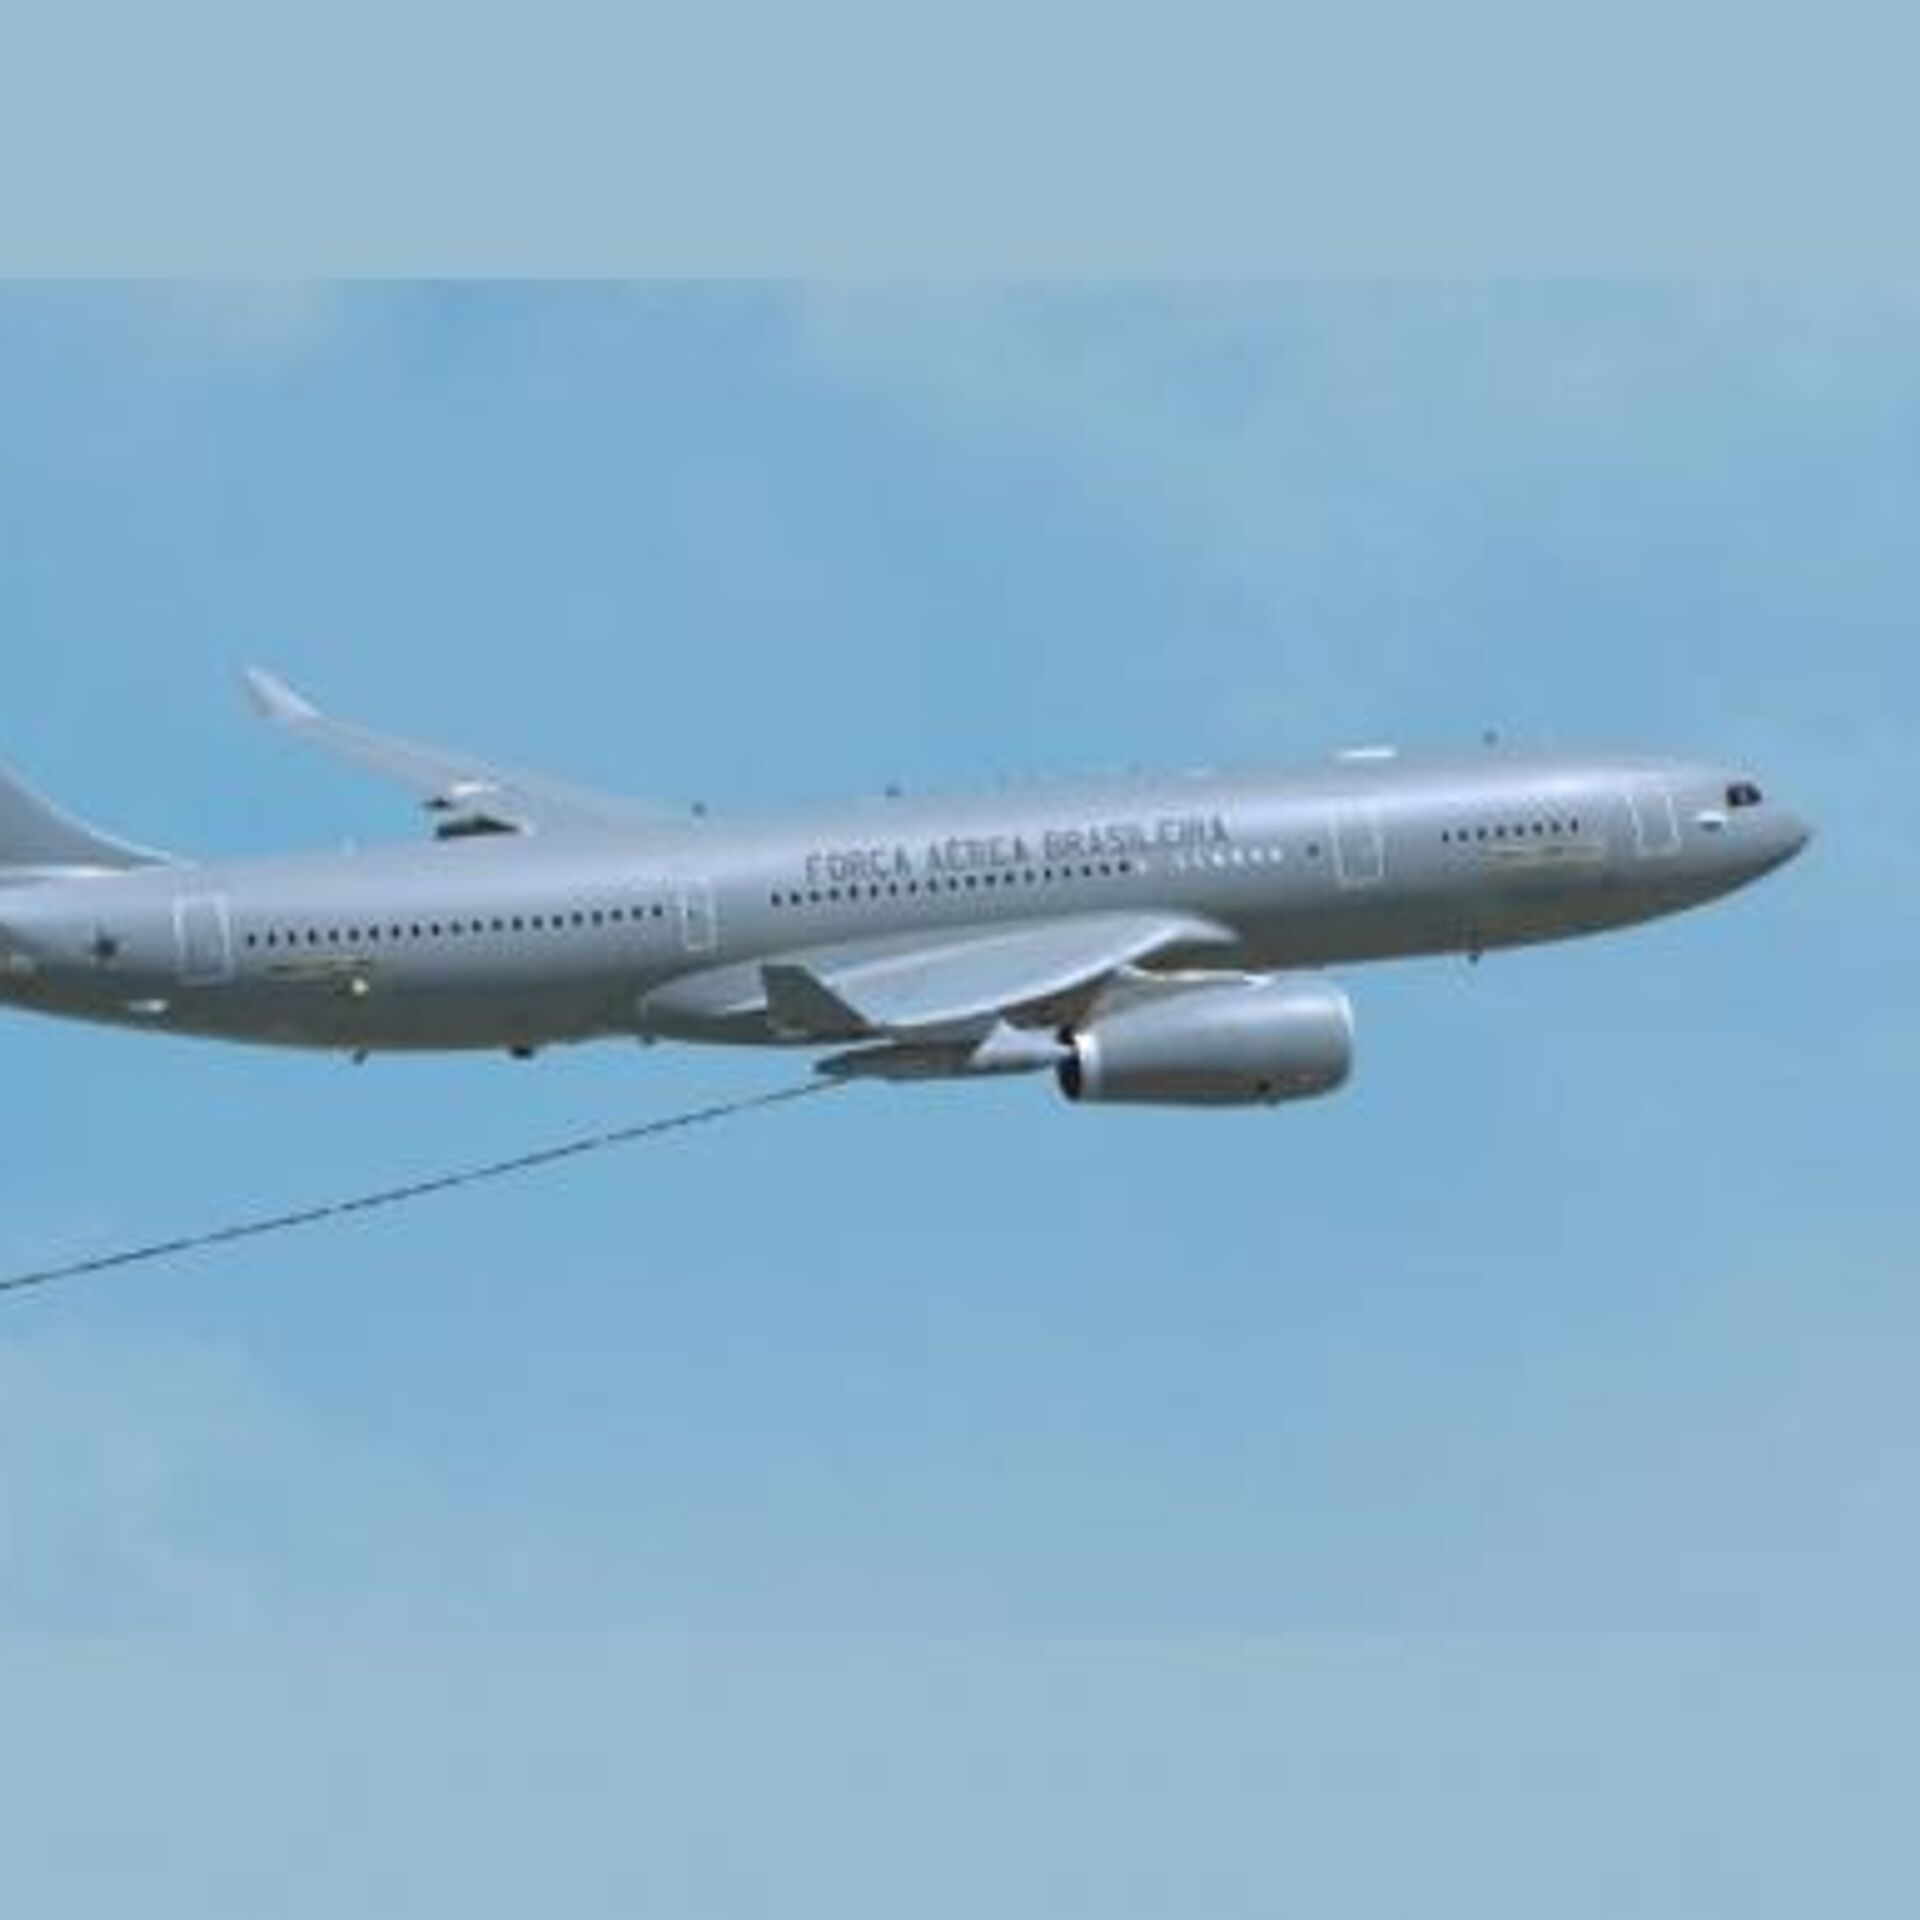 Nova aeronave KC-30 é incorporada à Força Aérea Brasileira (FAB